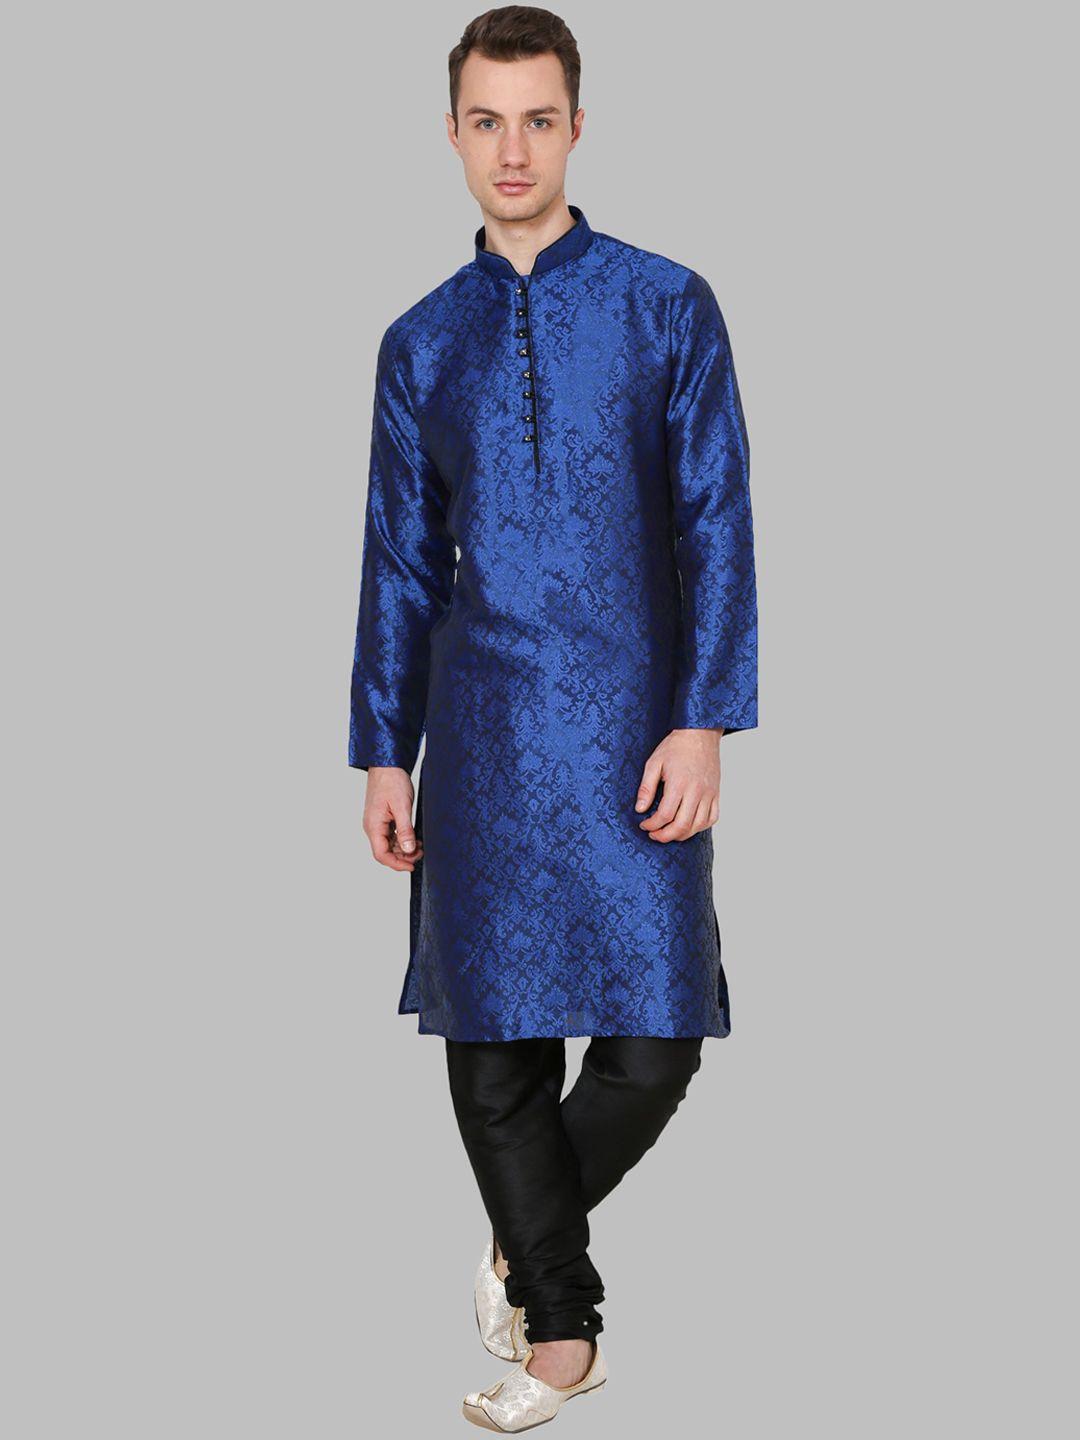 royal kurta men blue ethnic motifs printed dupion silk kurta with churidar